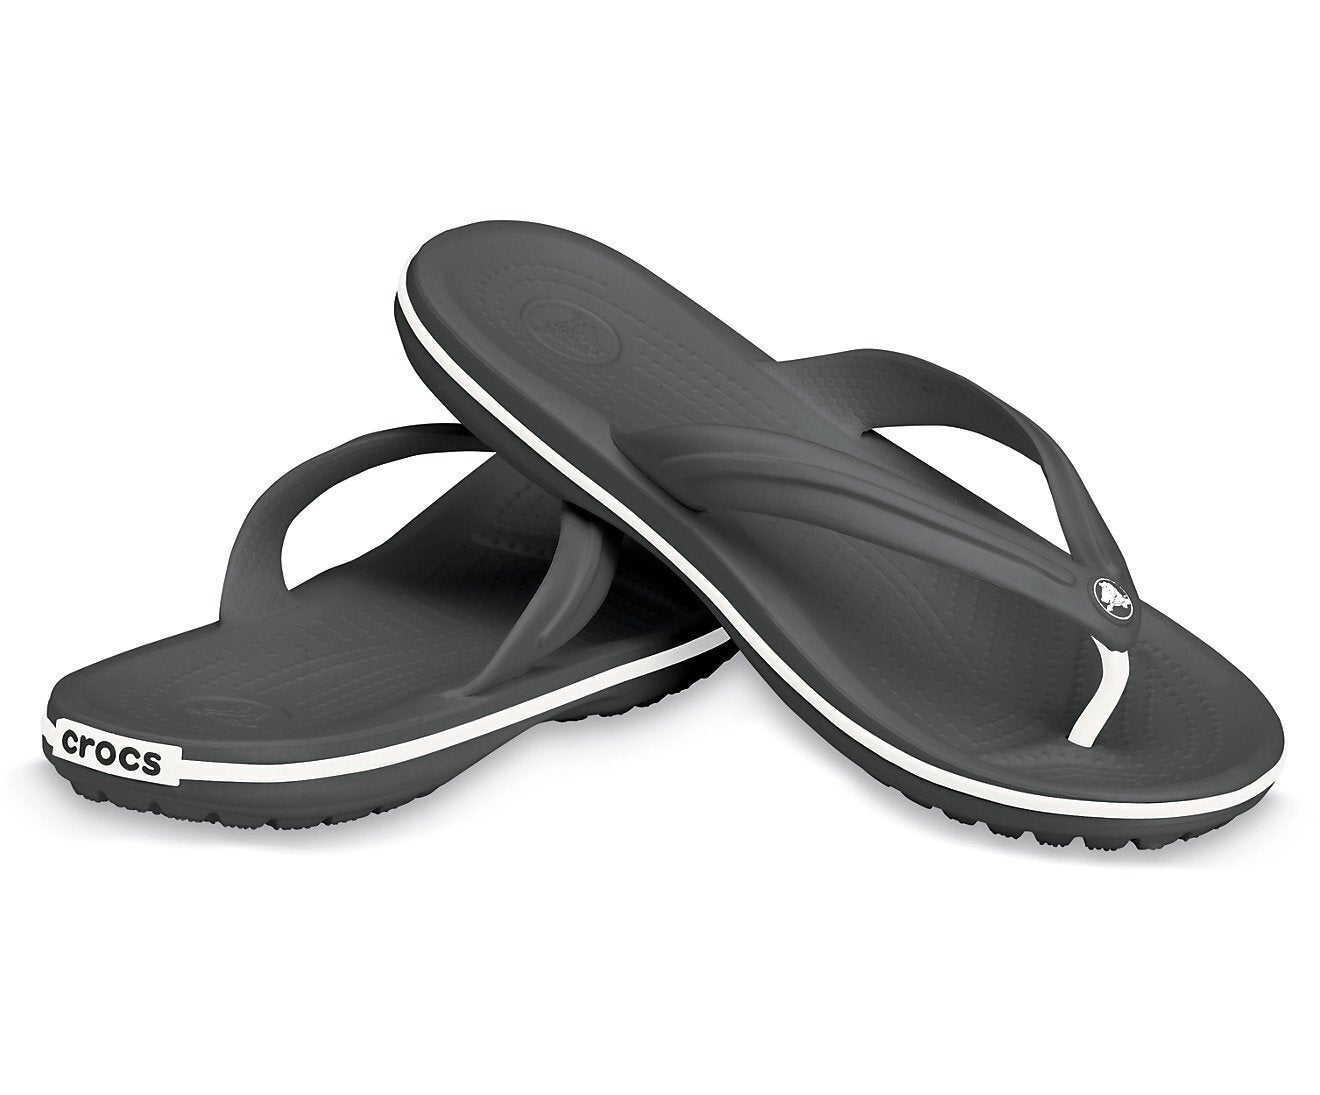 Crocs Crocband Croslite Flip Flops Thongs - Black | Buy Thongs ...